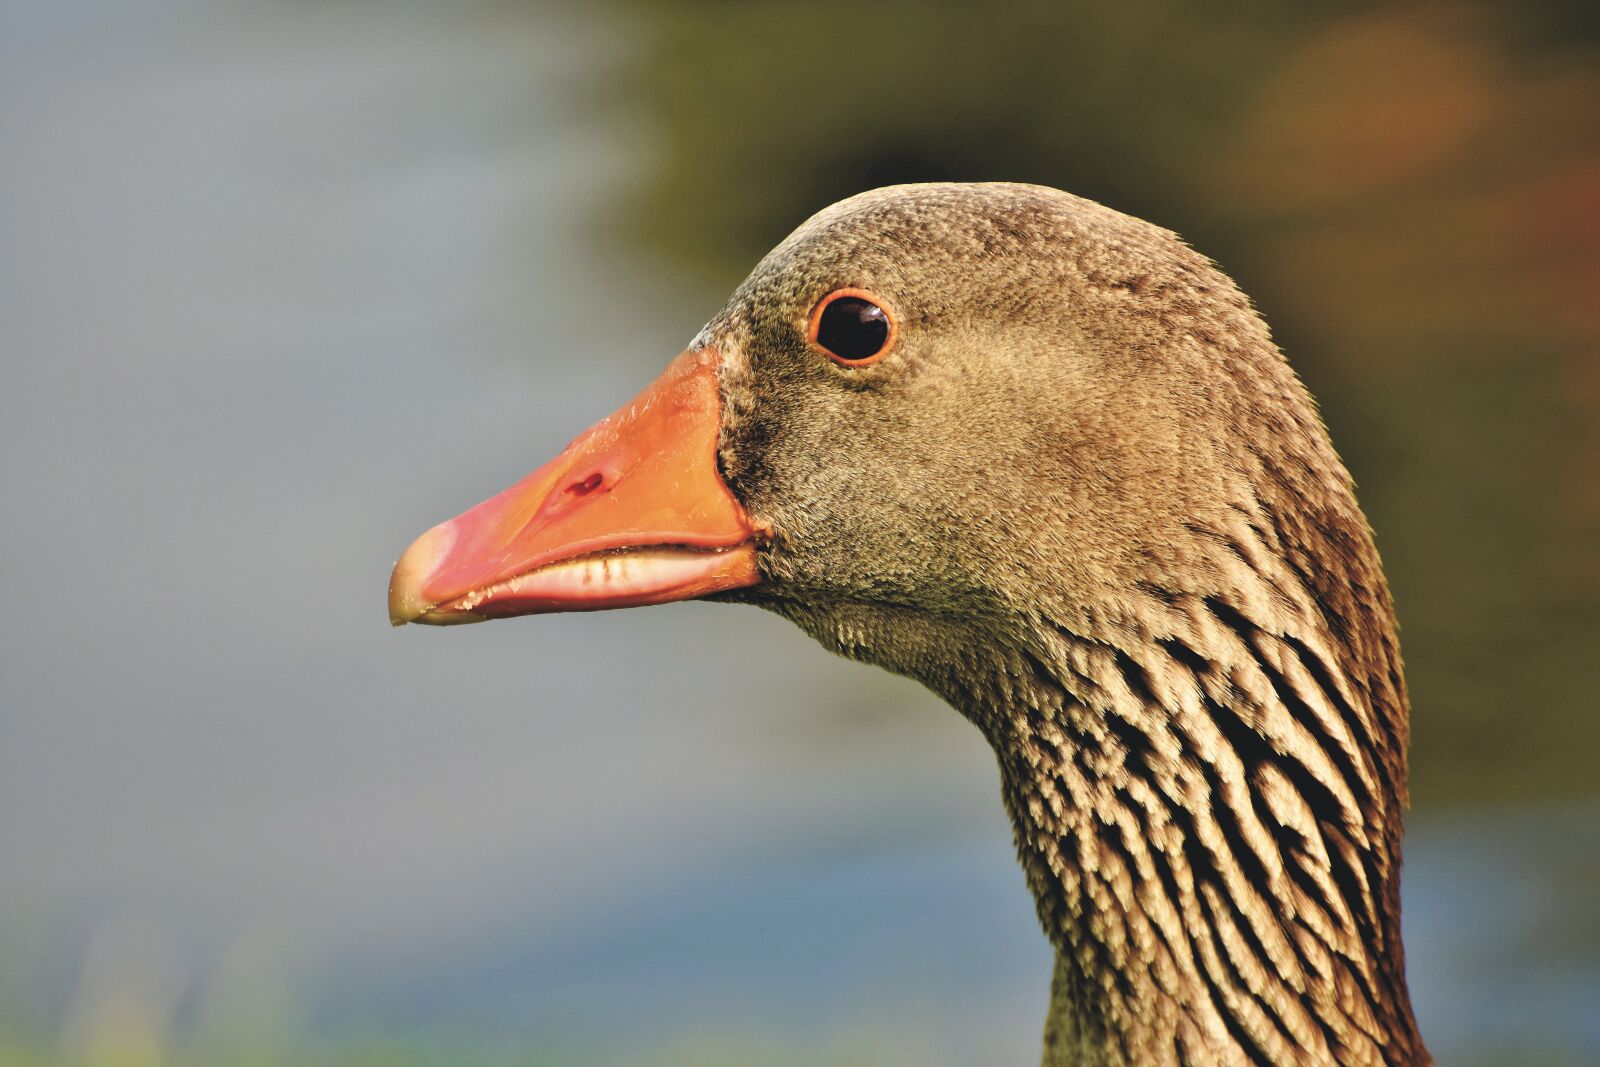 Nikon D7200 sample photo. Goose, greylag goose, bird photography